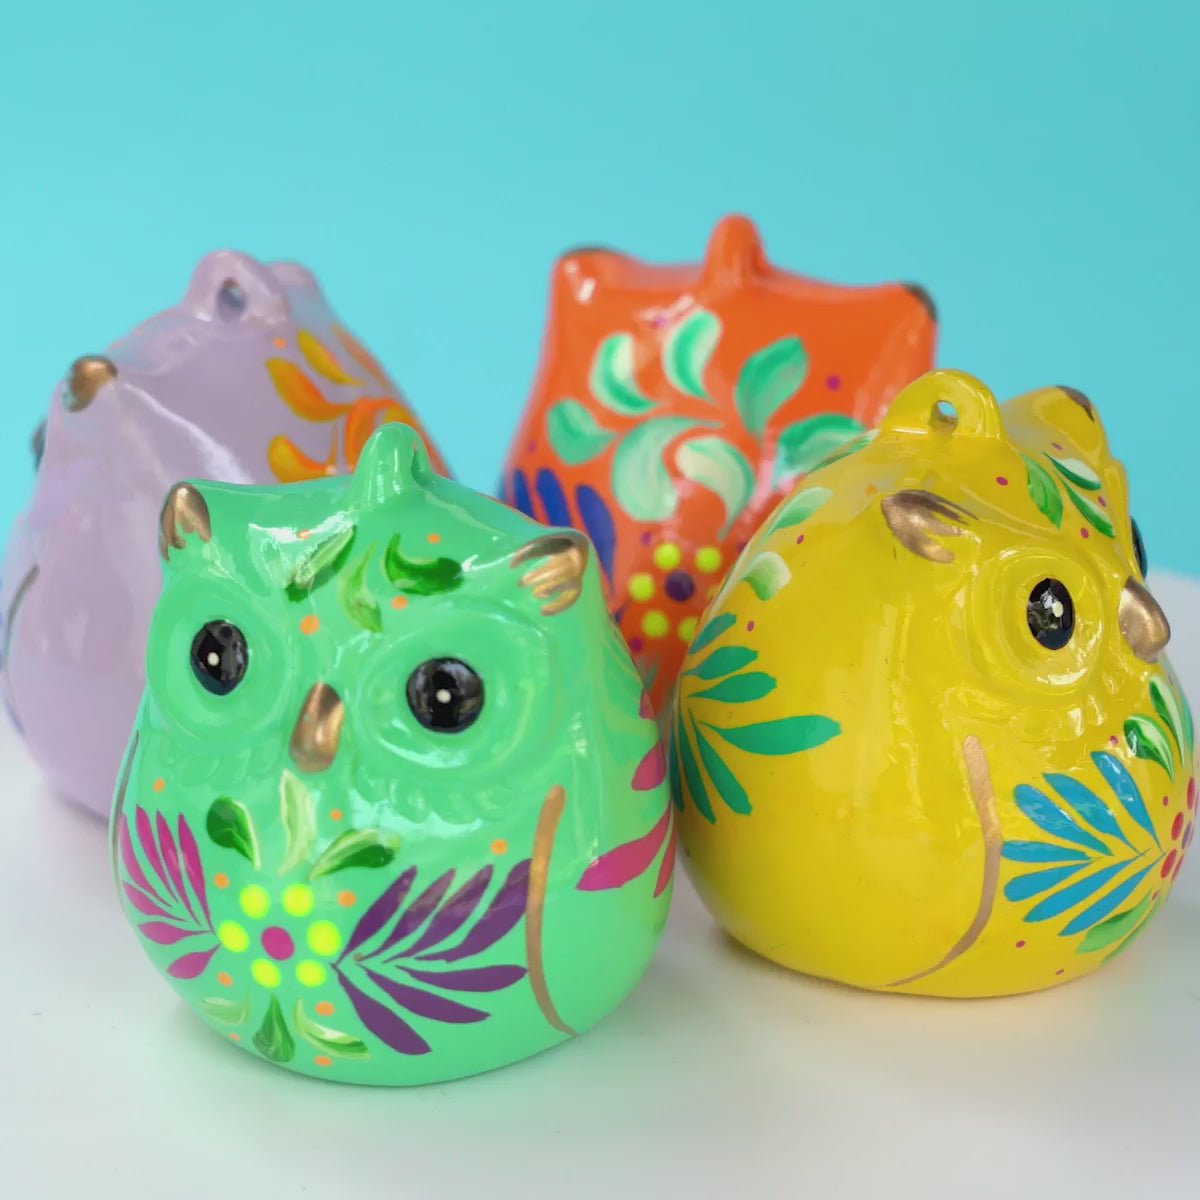 Owl - Confetti Ceramic Ornament